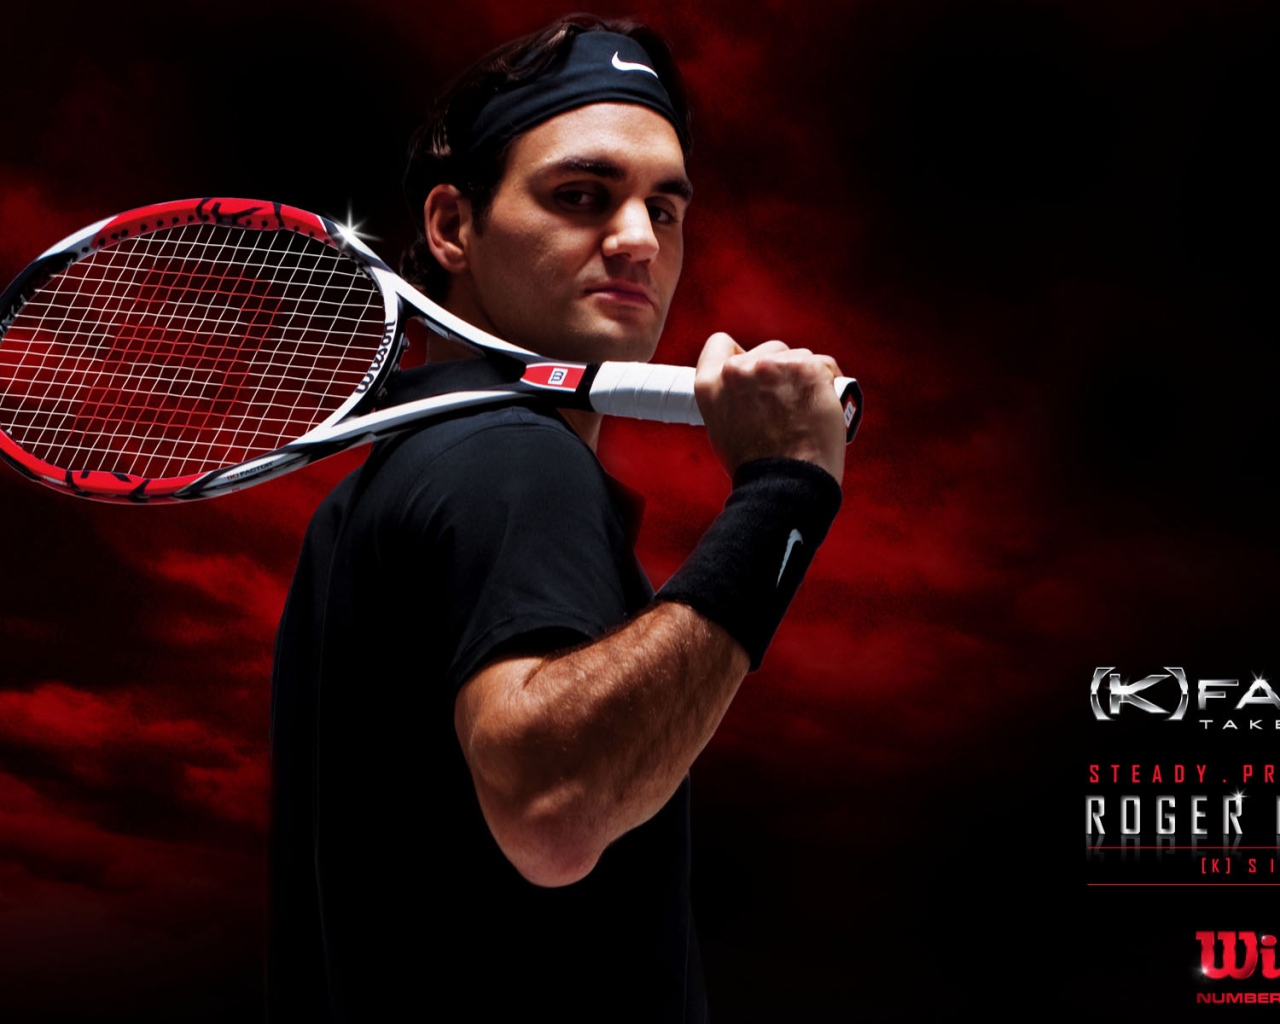 Wallpaper Roger Federer Racket Tennis Player